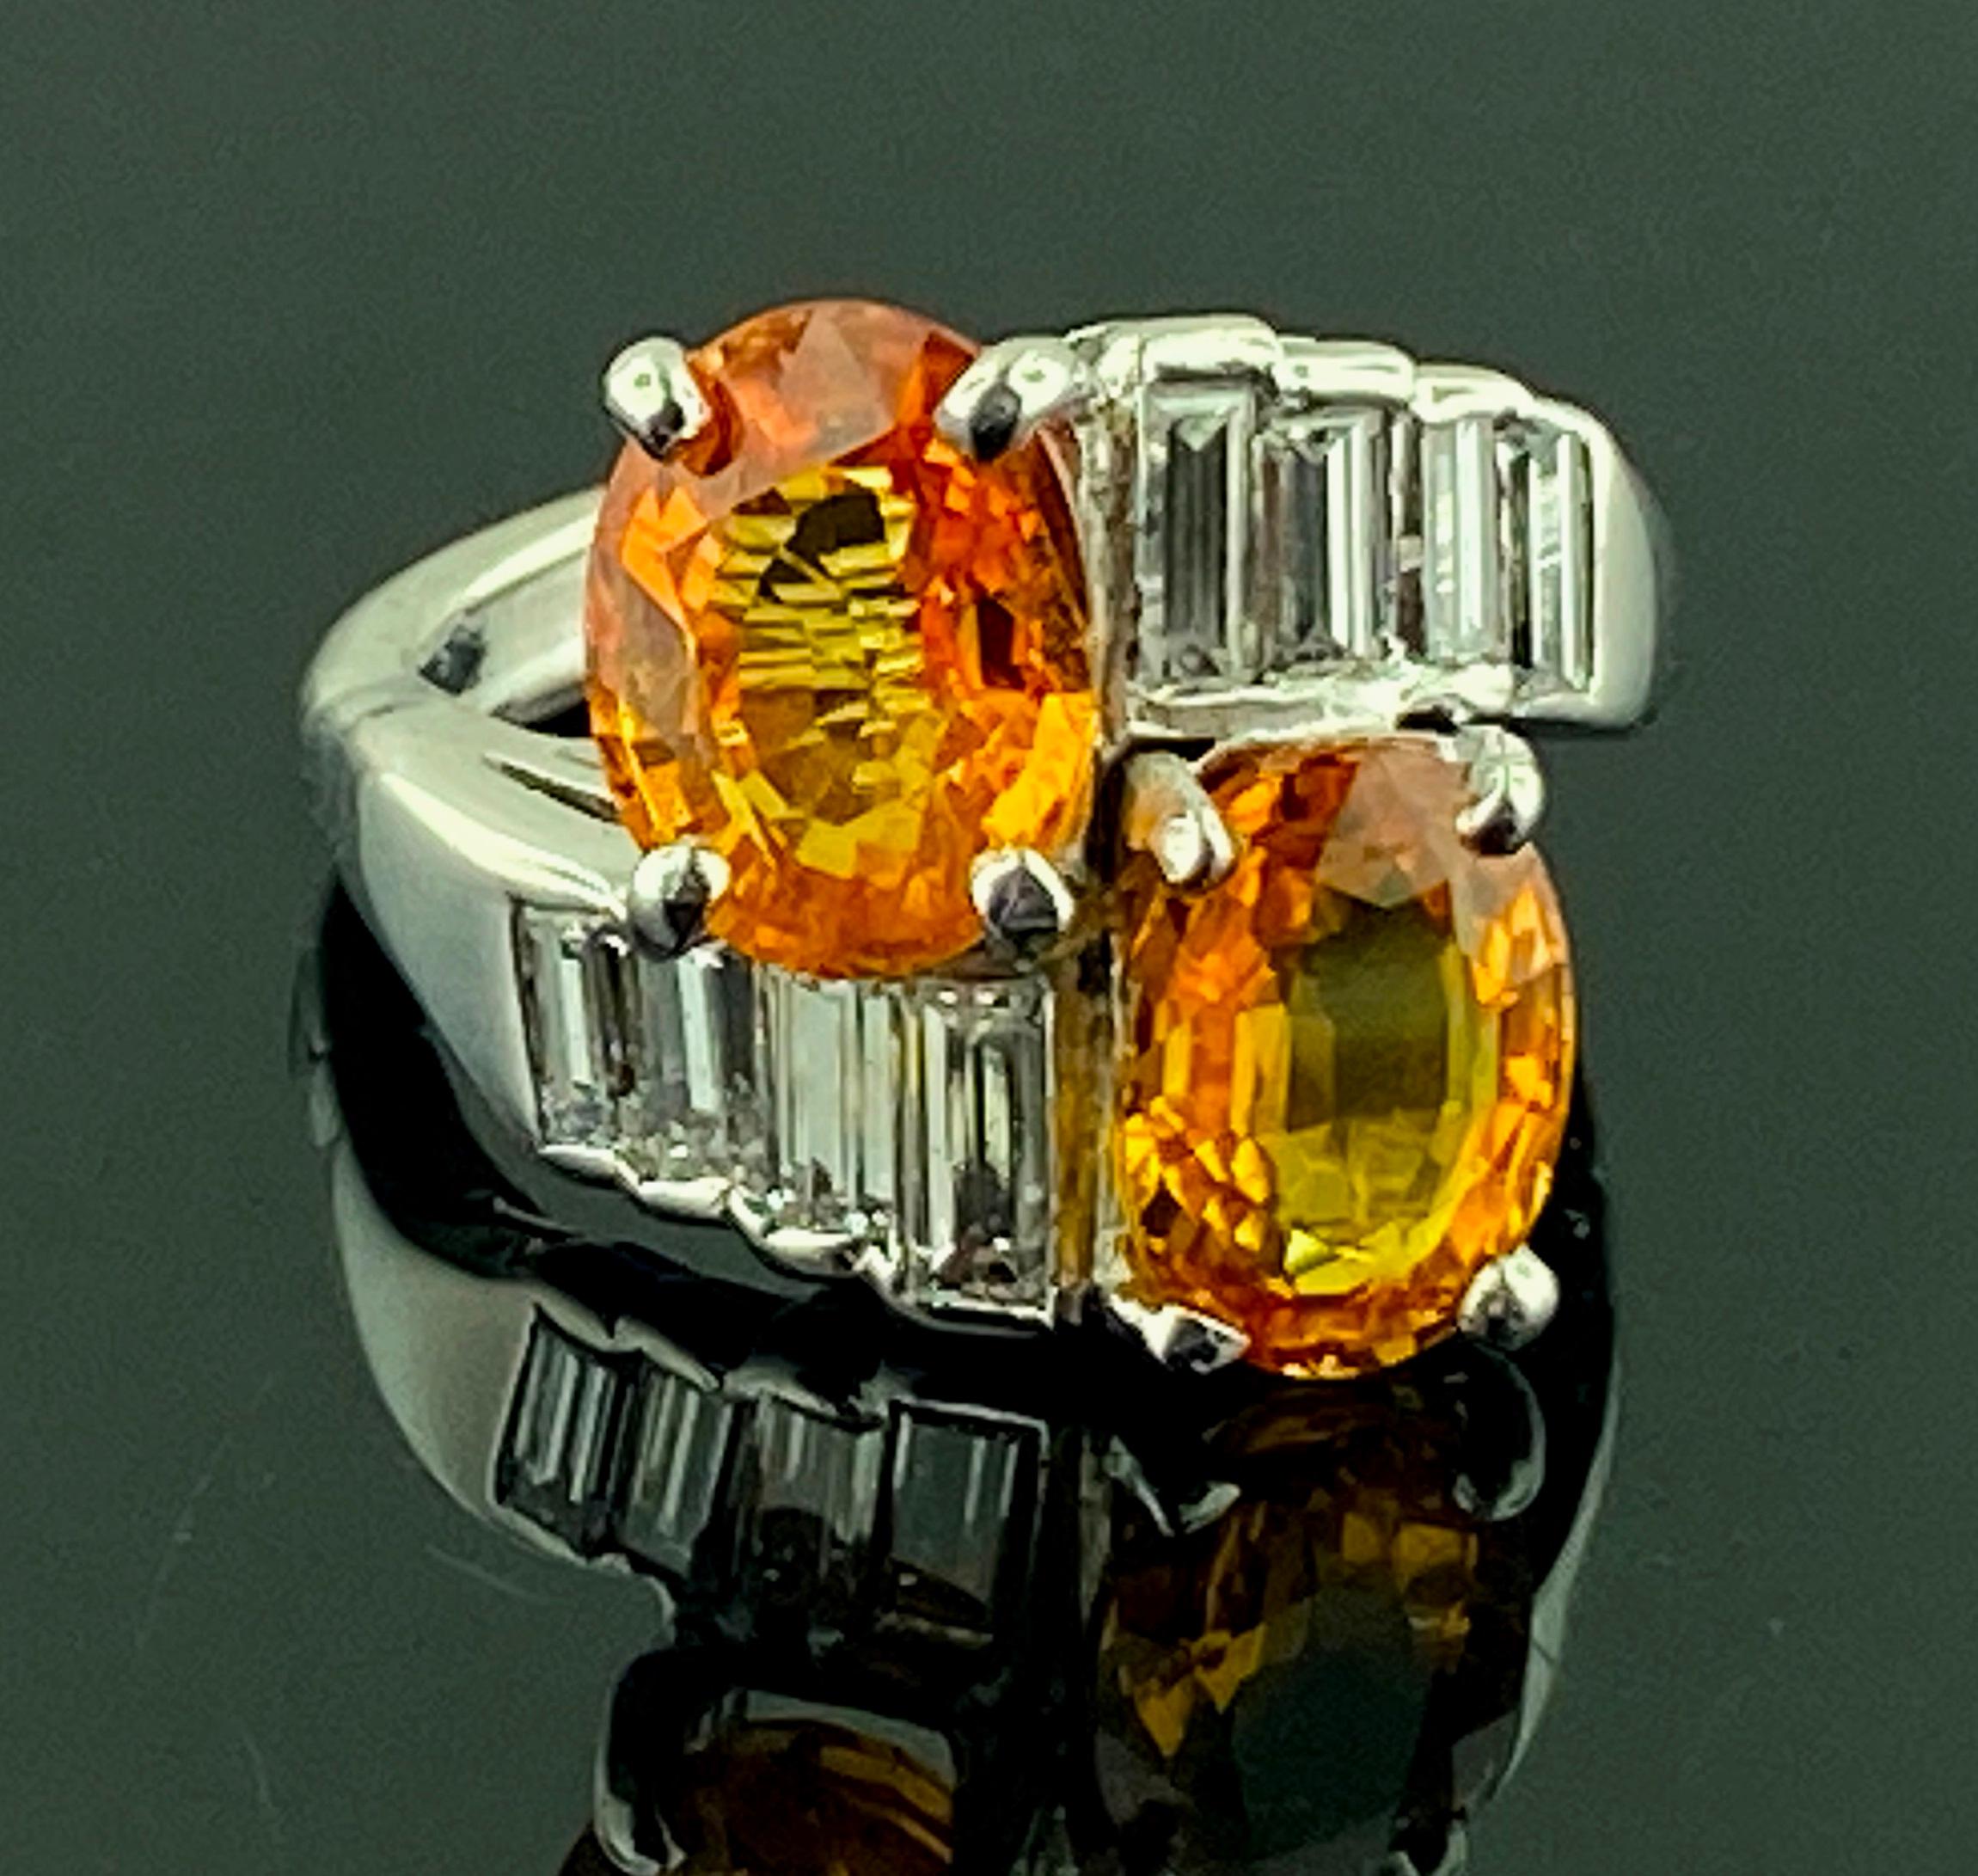 Der obere Teil des Rings, in dem die beiden orangefarbenen Saphire im Ovalschliff sitzen, ist aus Platin.  Die beiden ovalen orangefarbenen Saphire wiegen 2,55 Karat und 2,19 Karat, was einem Gesamtgewicht von 4,75 Karat entspricht.  Die Fassung aus